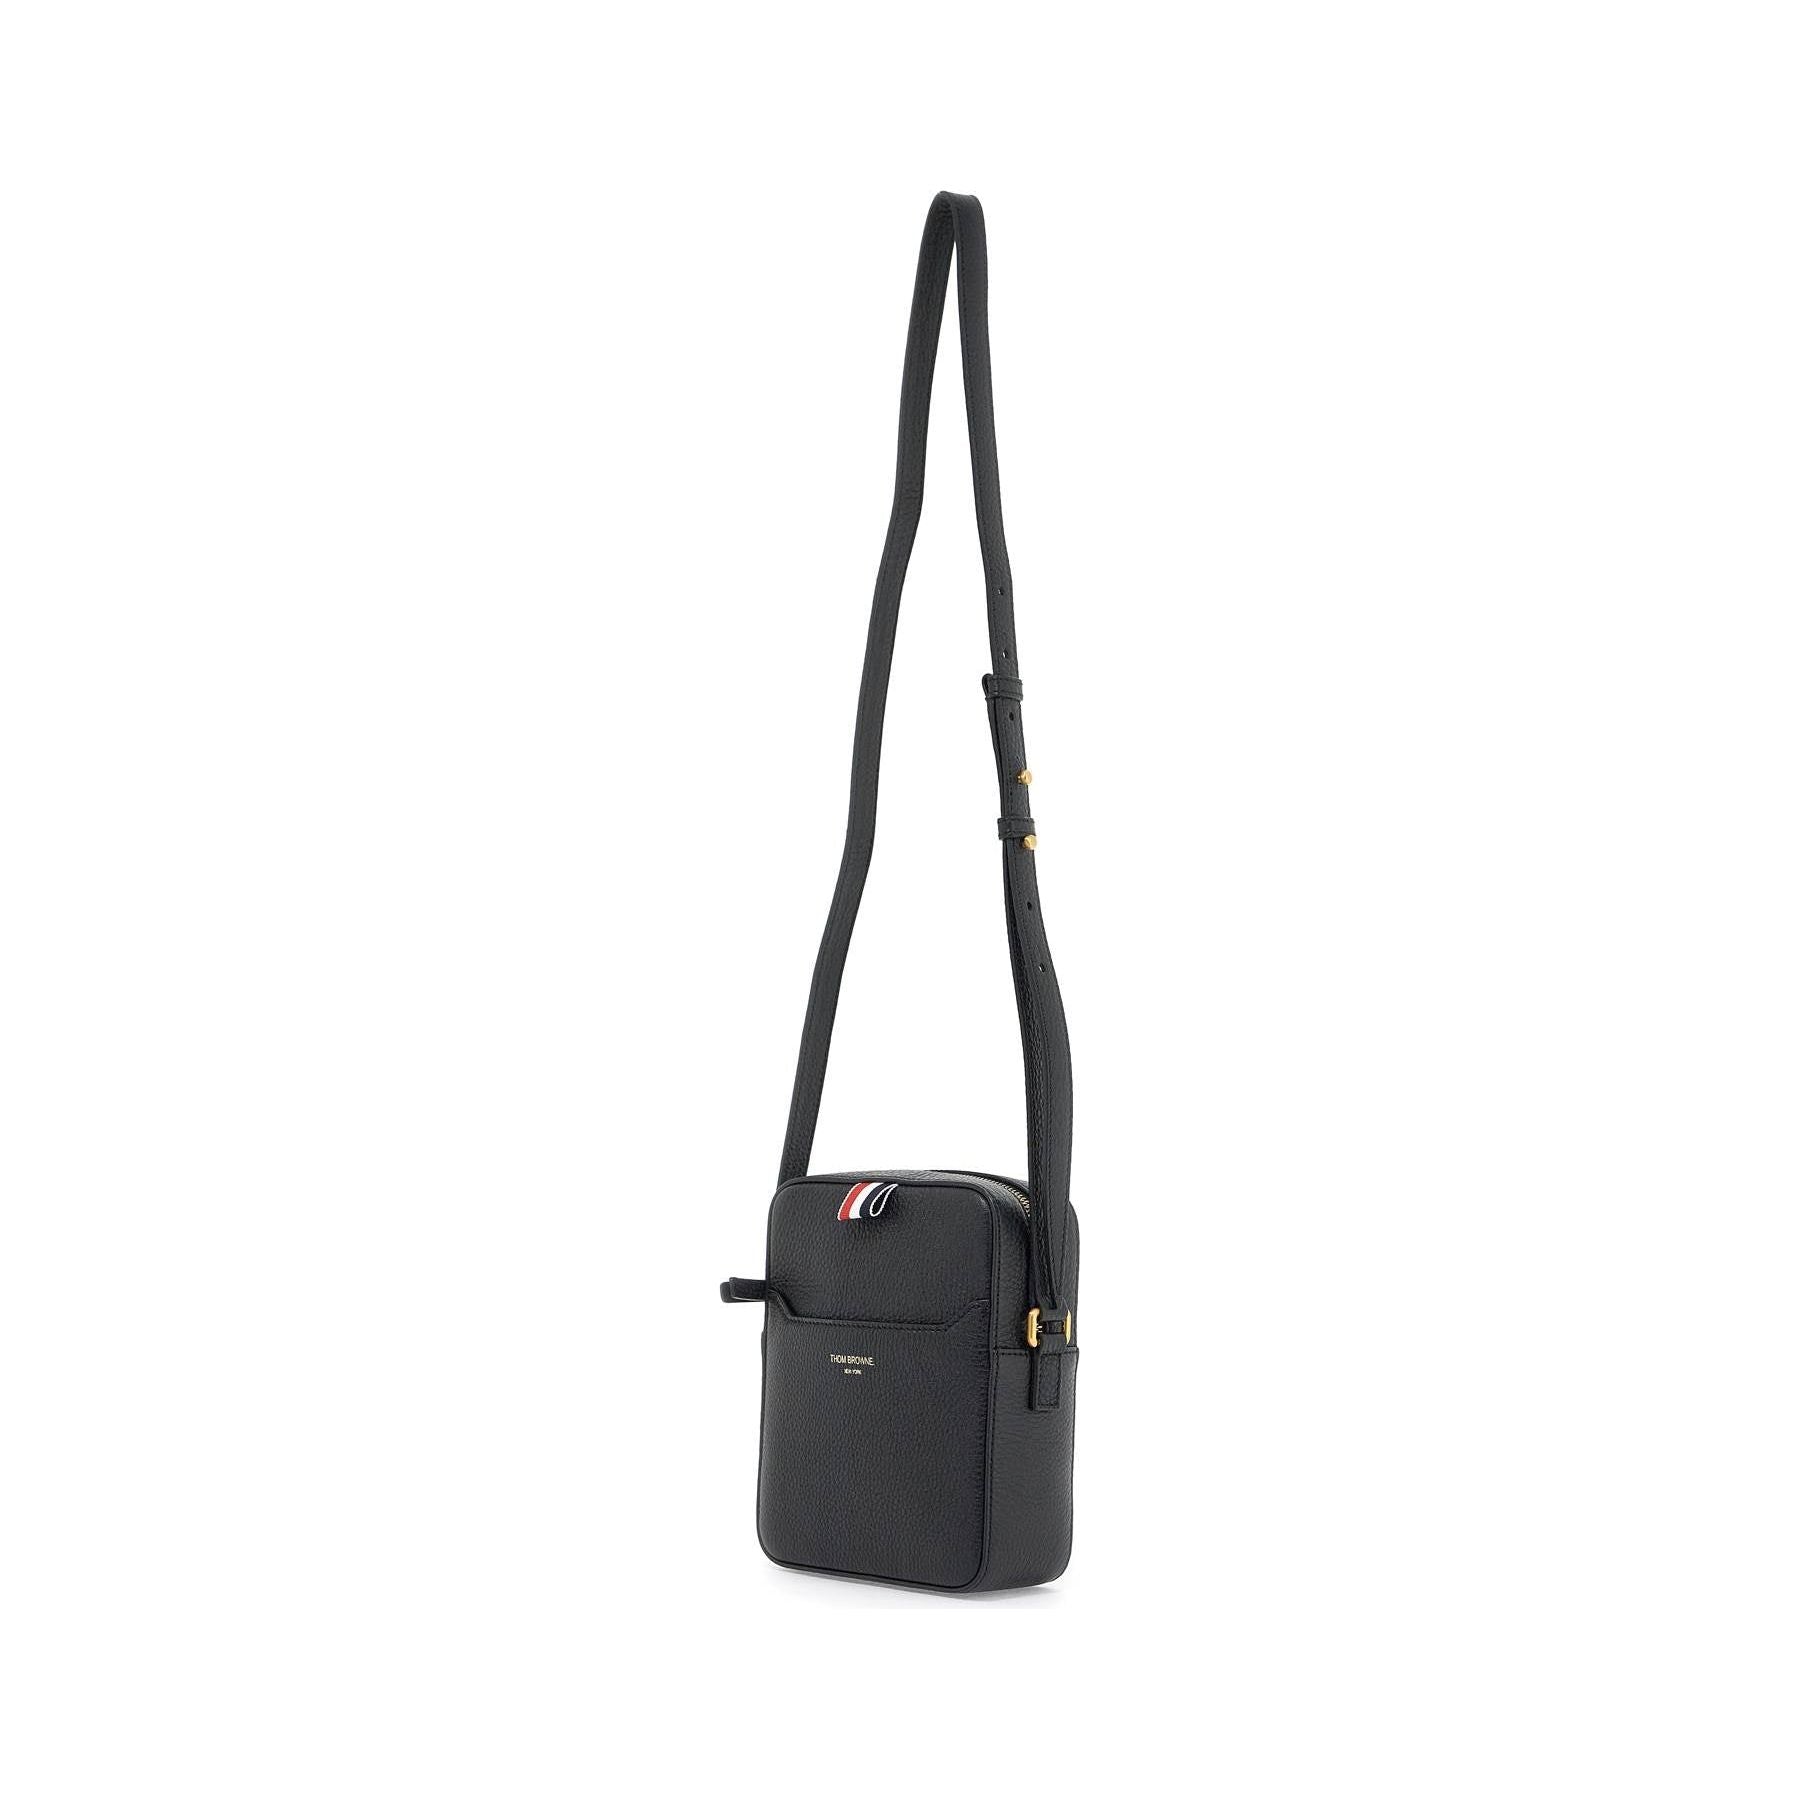 Pebble Grain Leather Vertical Camera Bag